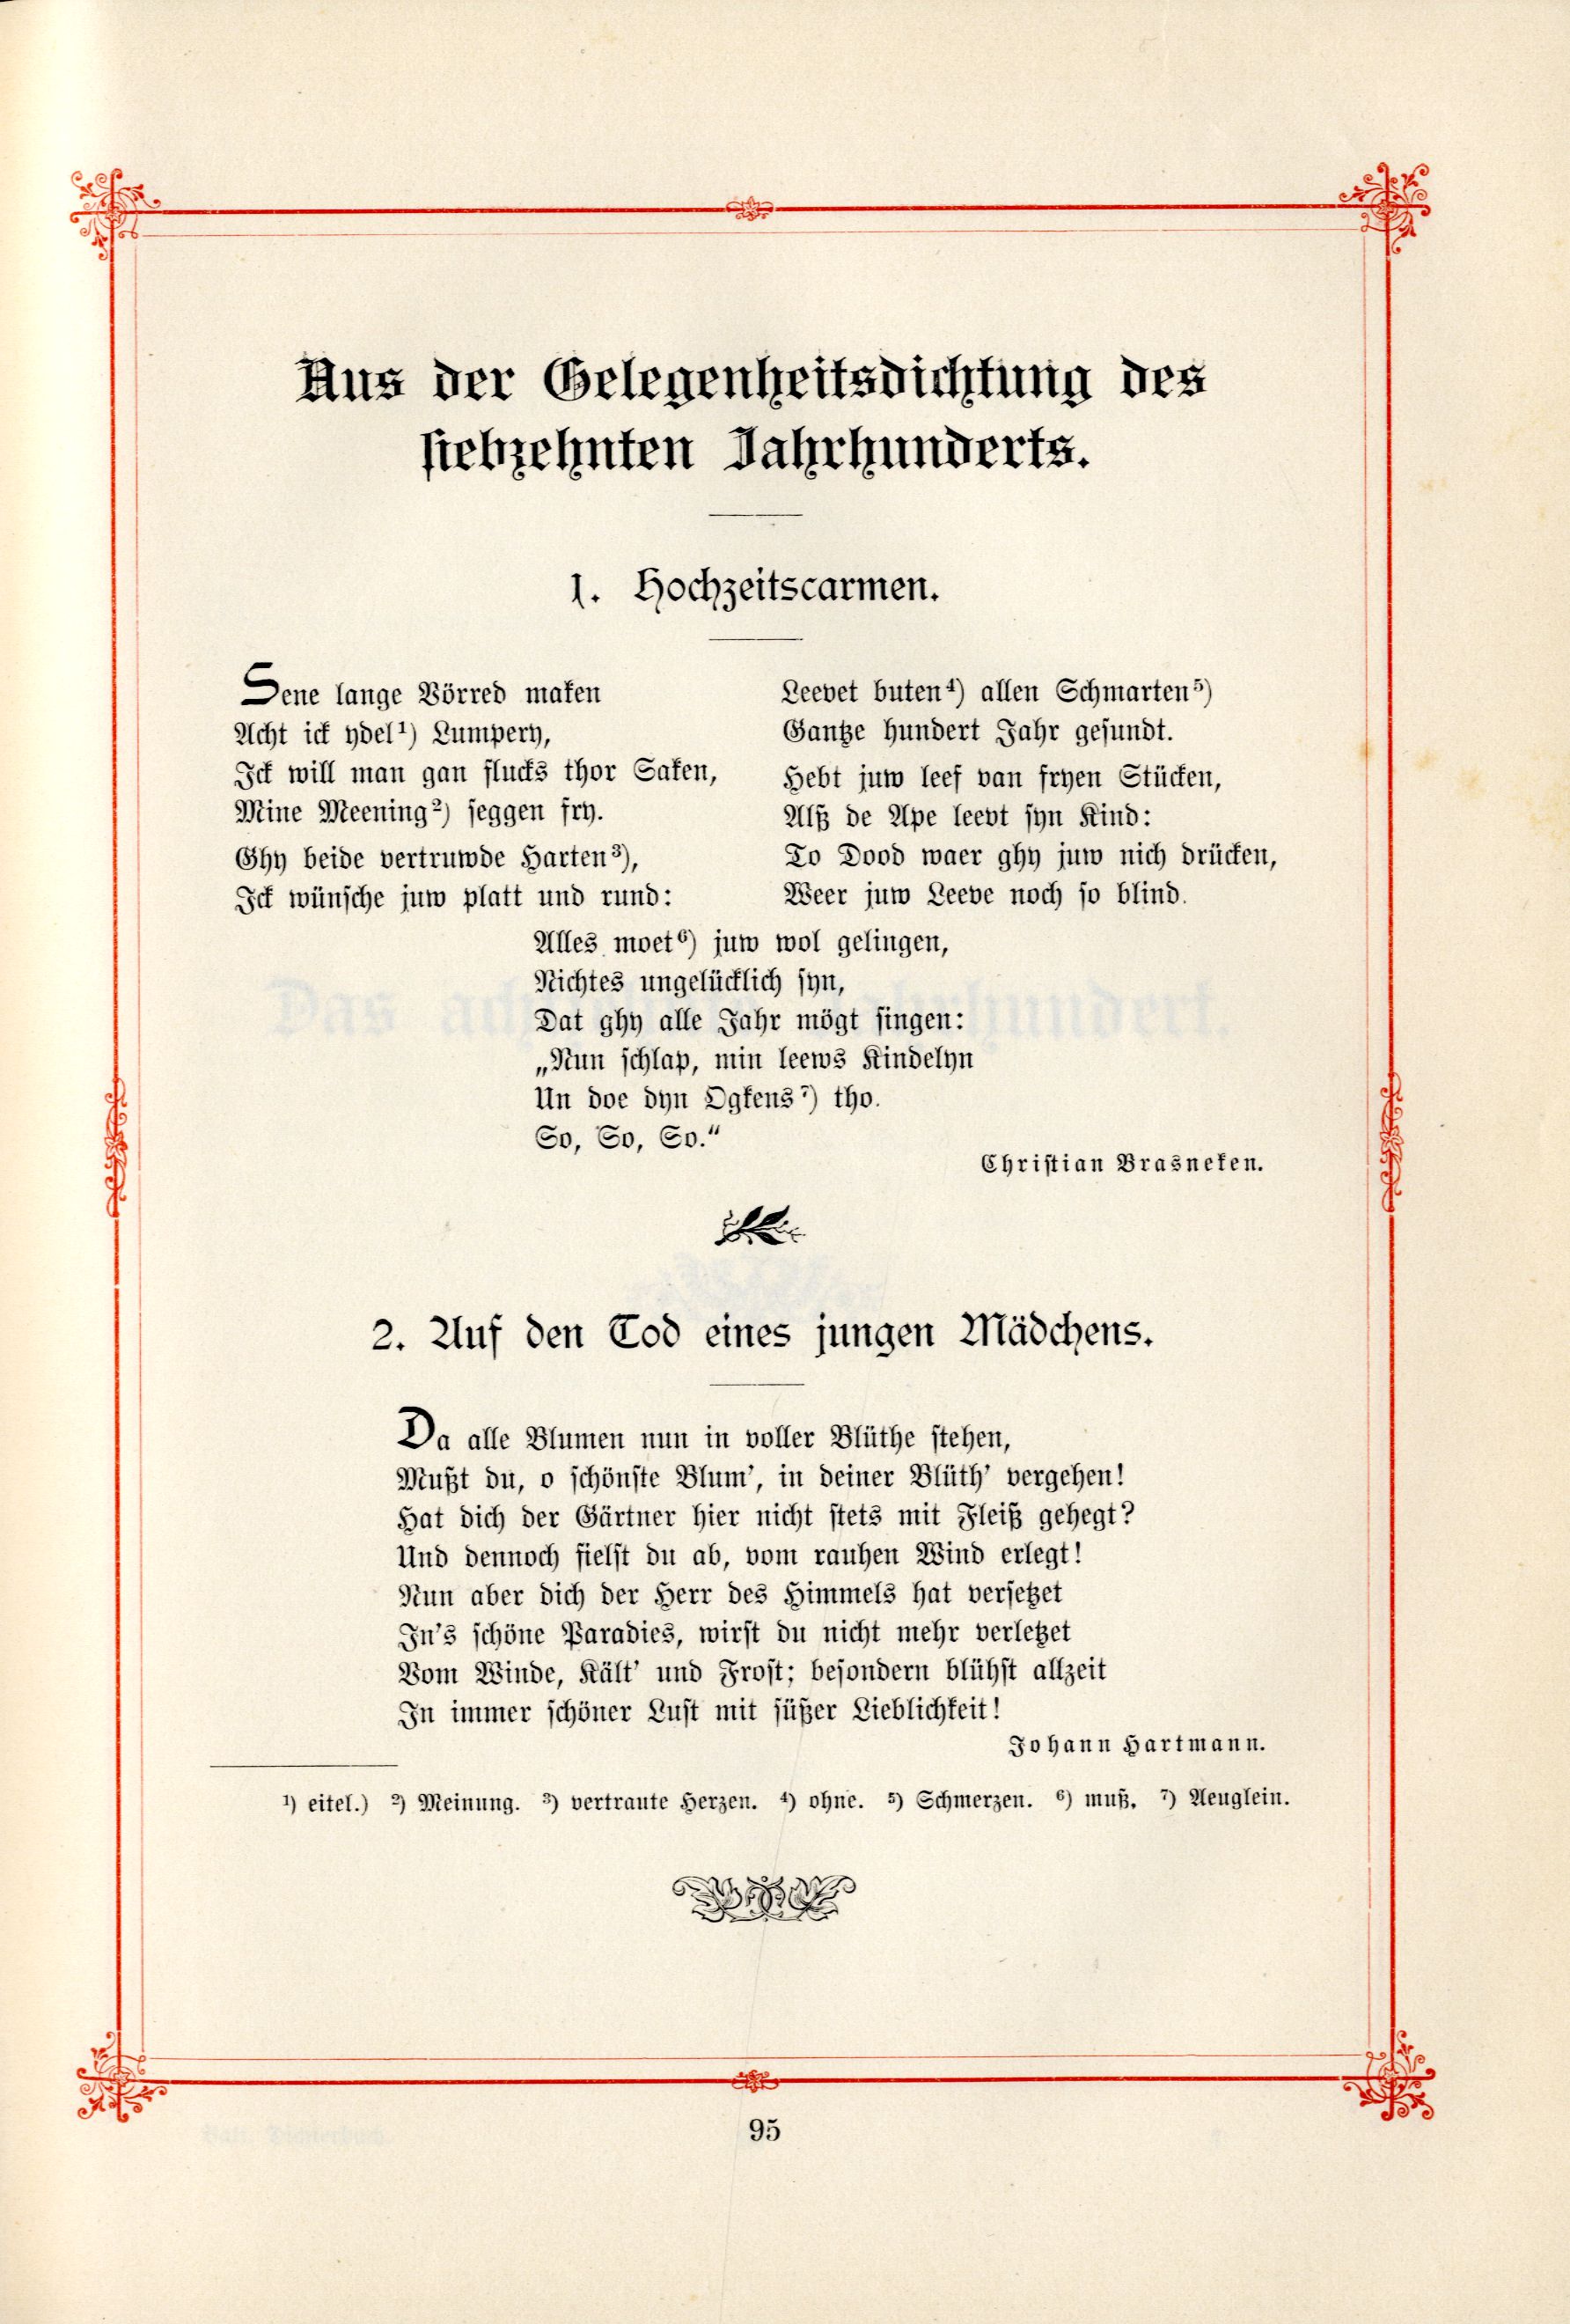 Das Baltische Dichterbuch (1895) | 141. (95) Main body of text